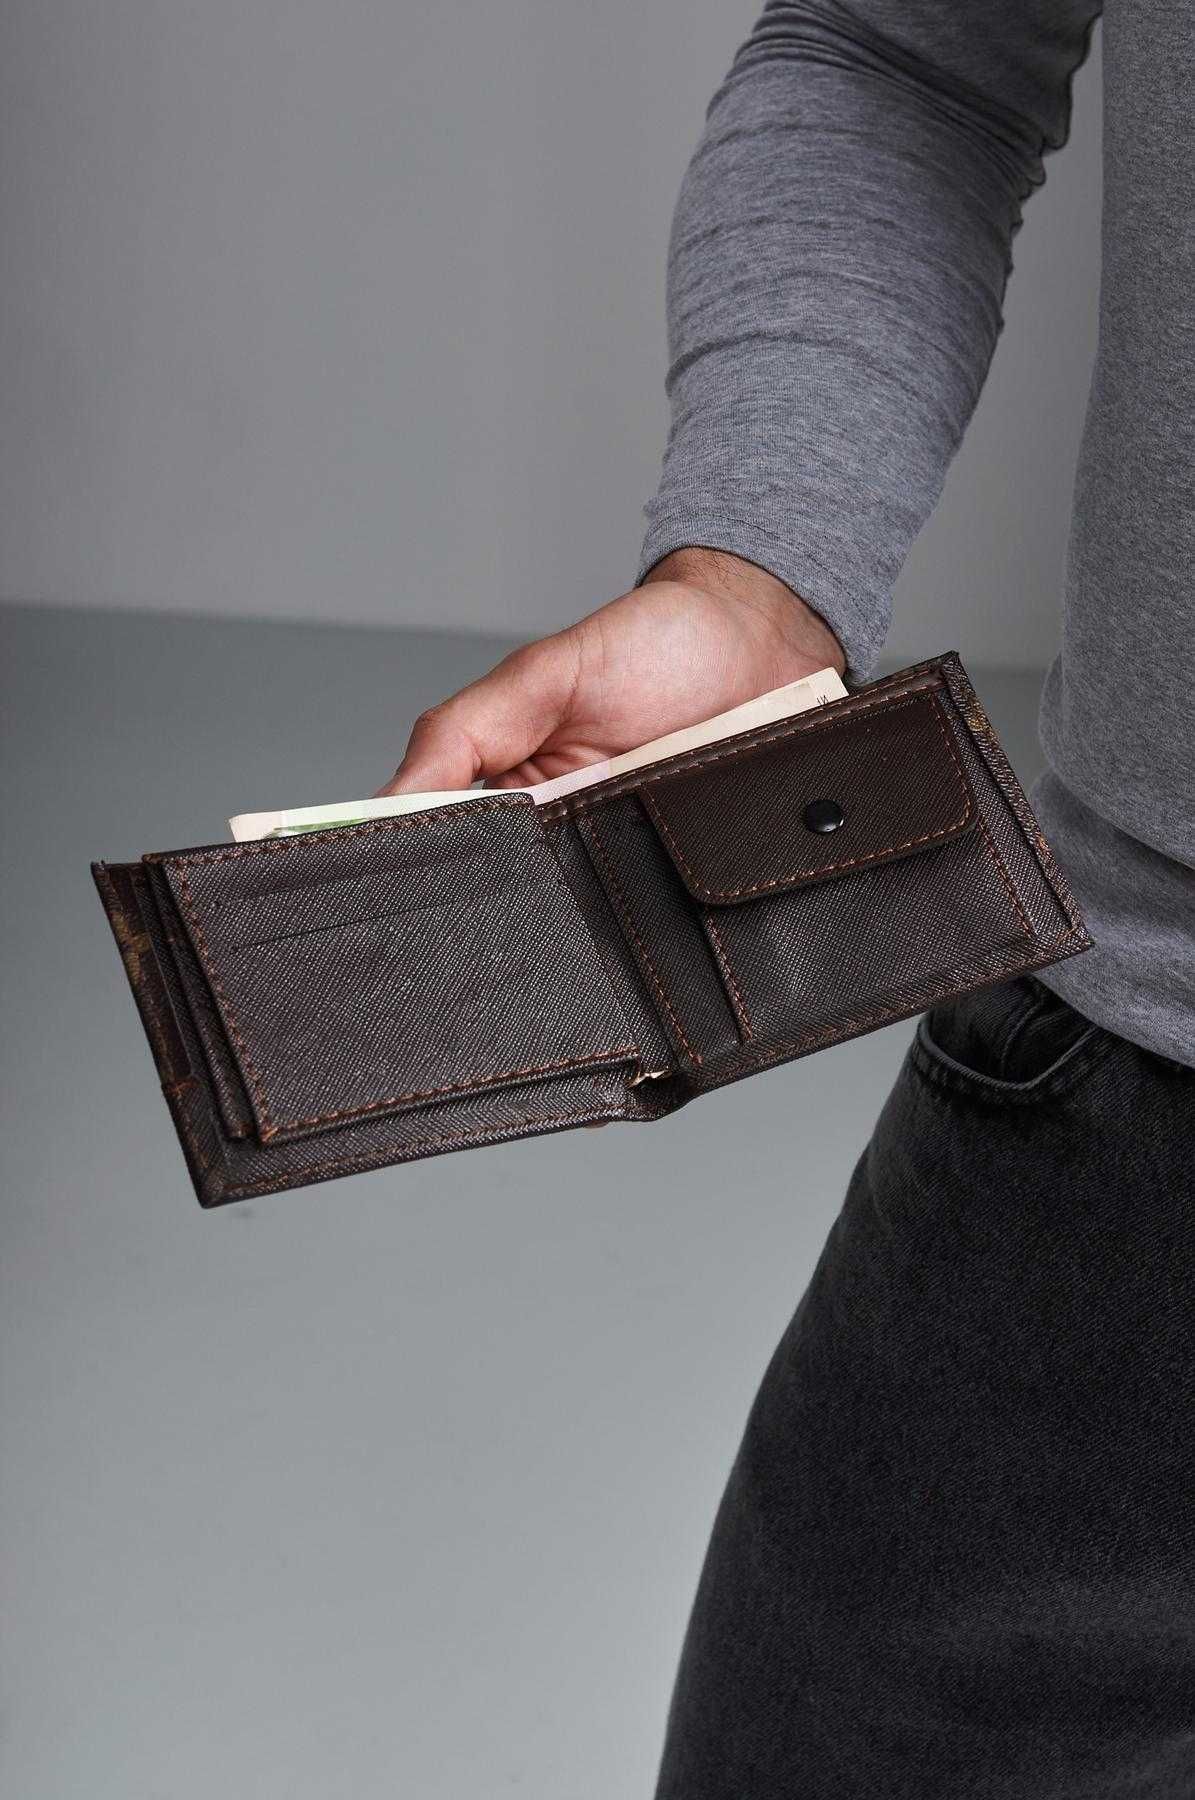 Гаманець шкіряний Louis Vuitton, коричневий, без застібки, гаманець LV